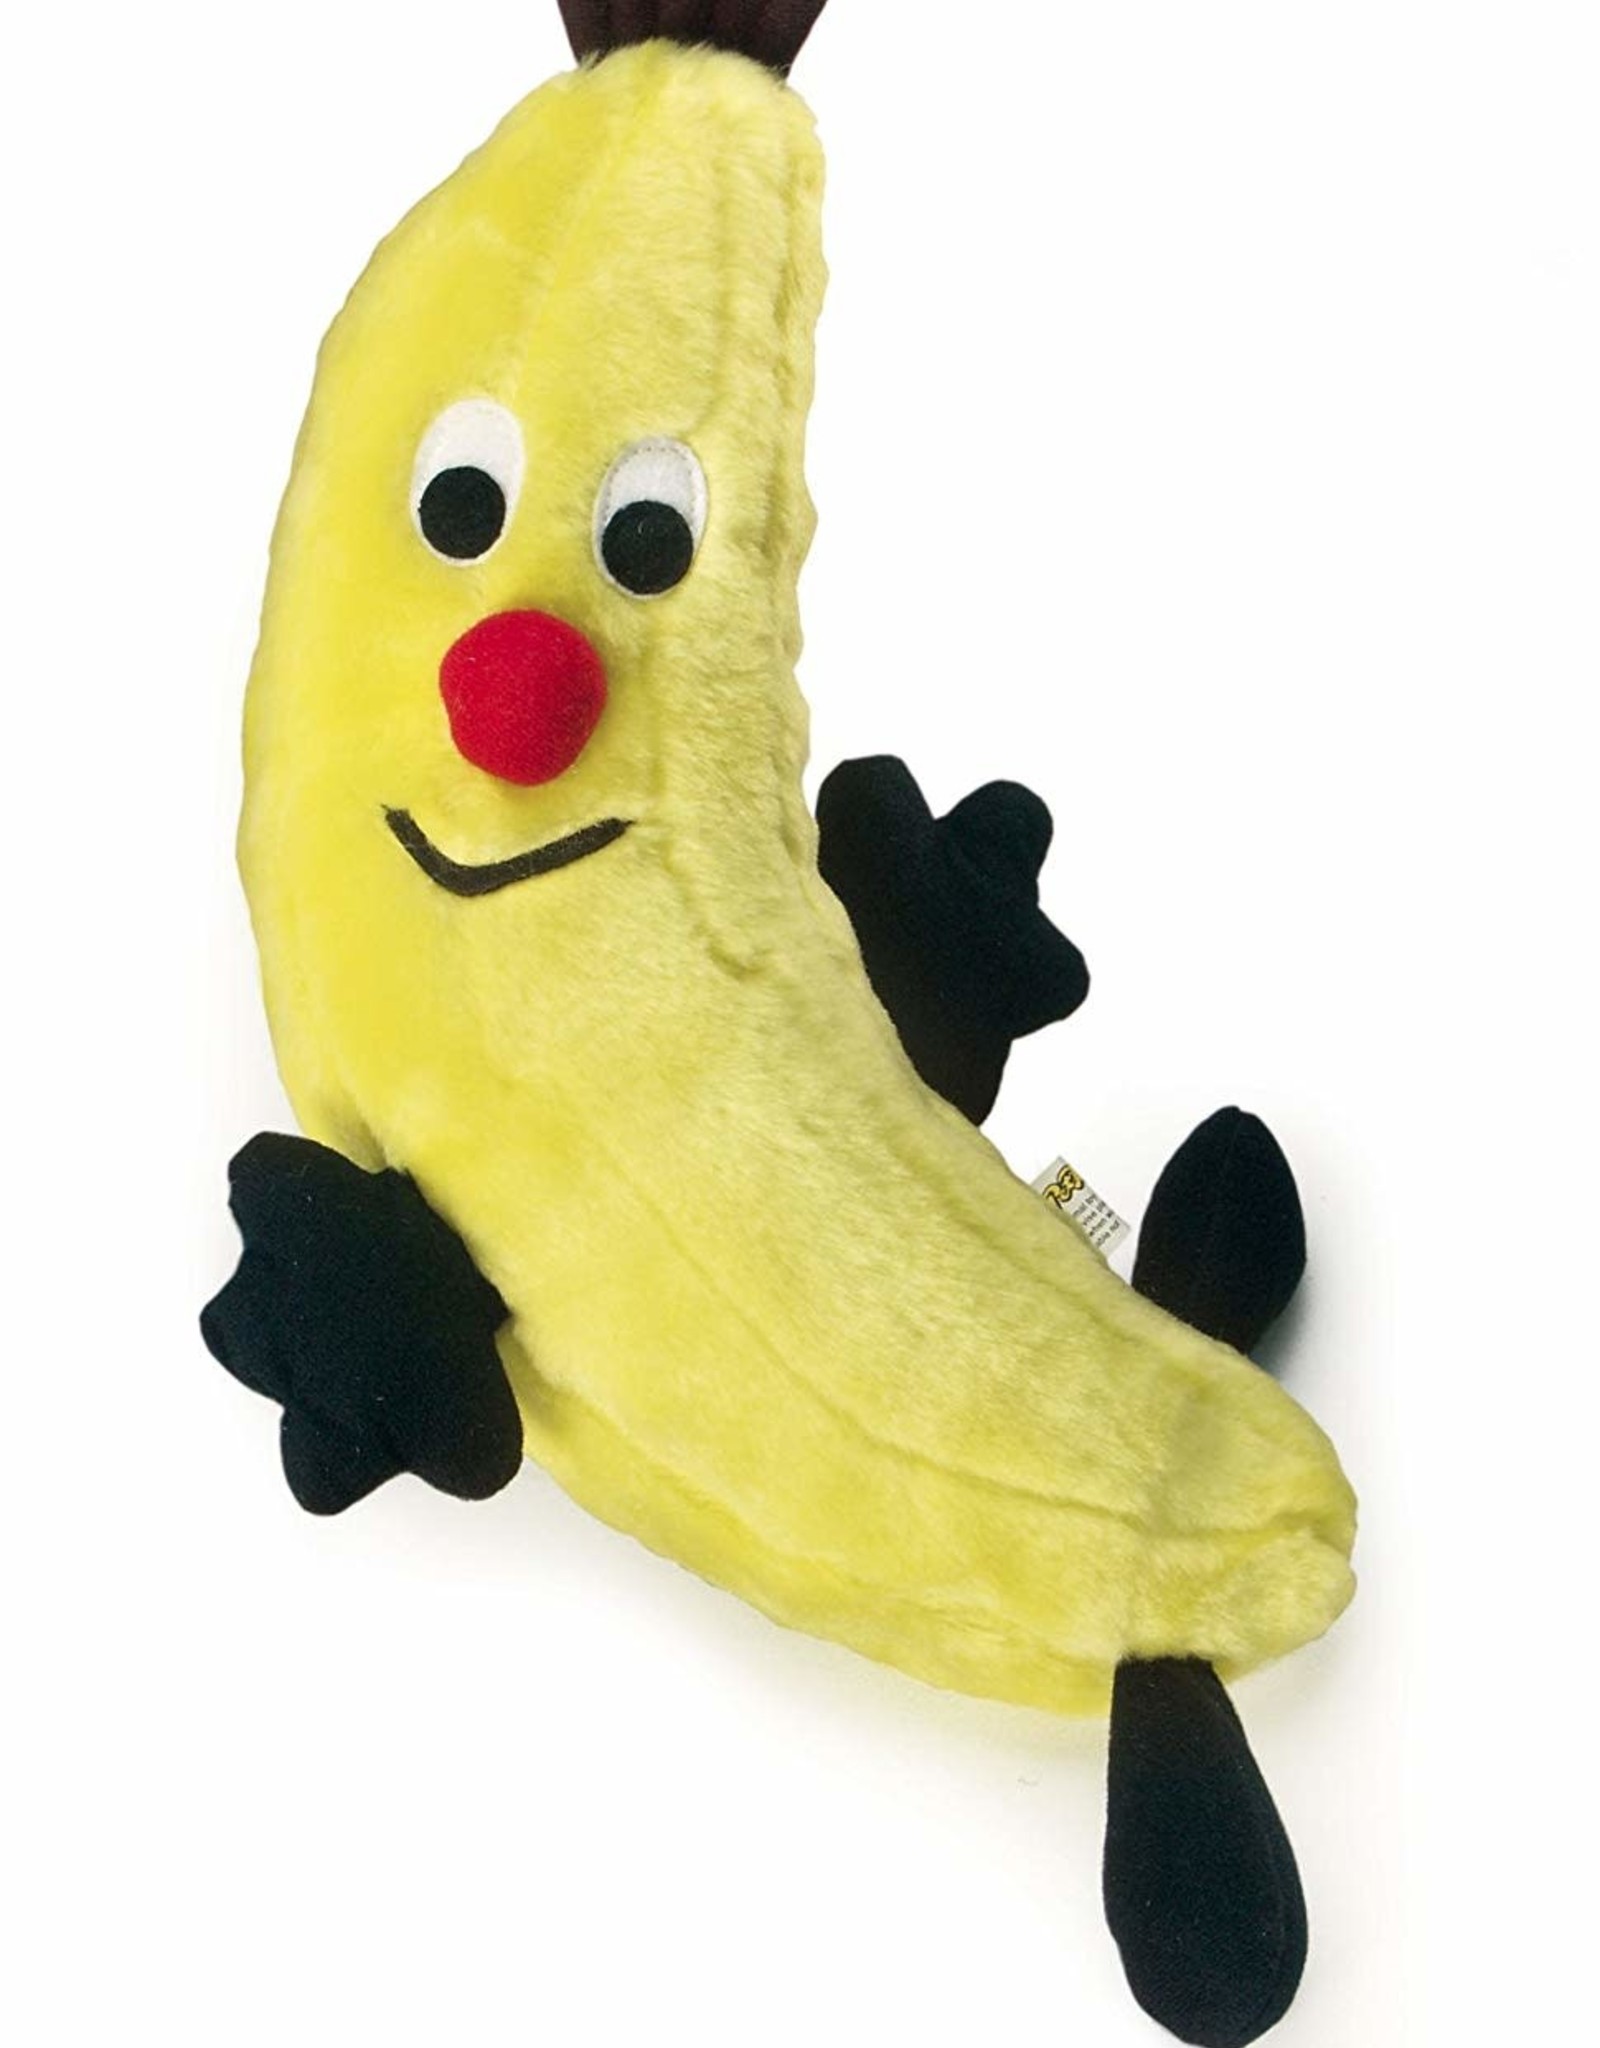 banana cuddly toy